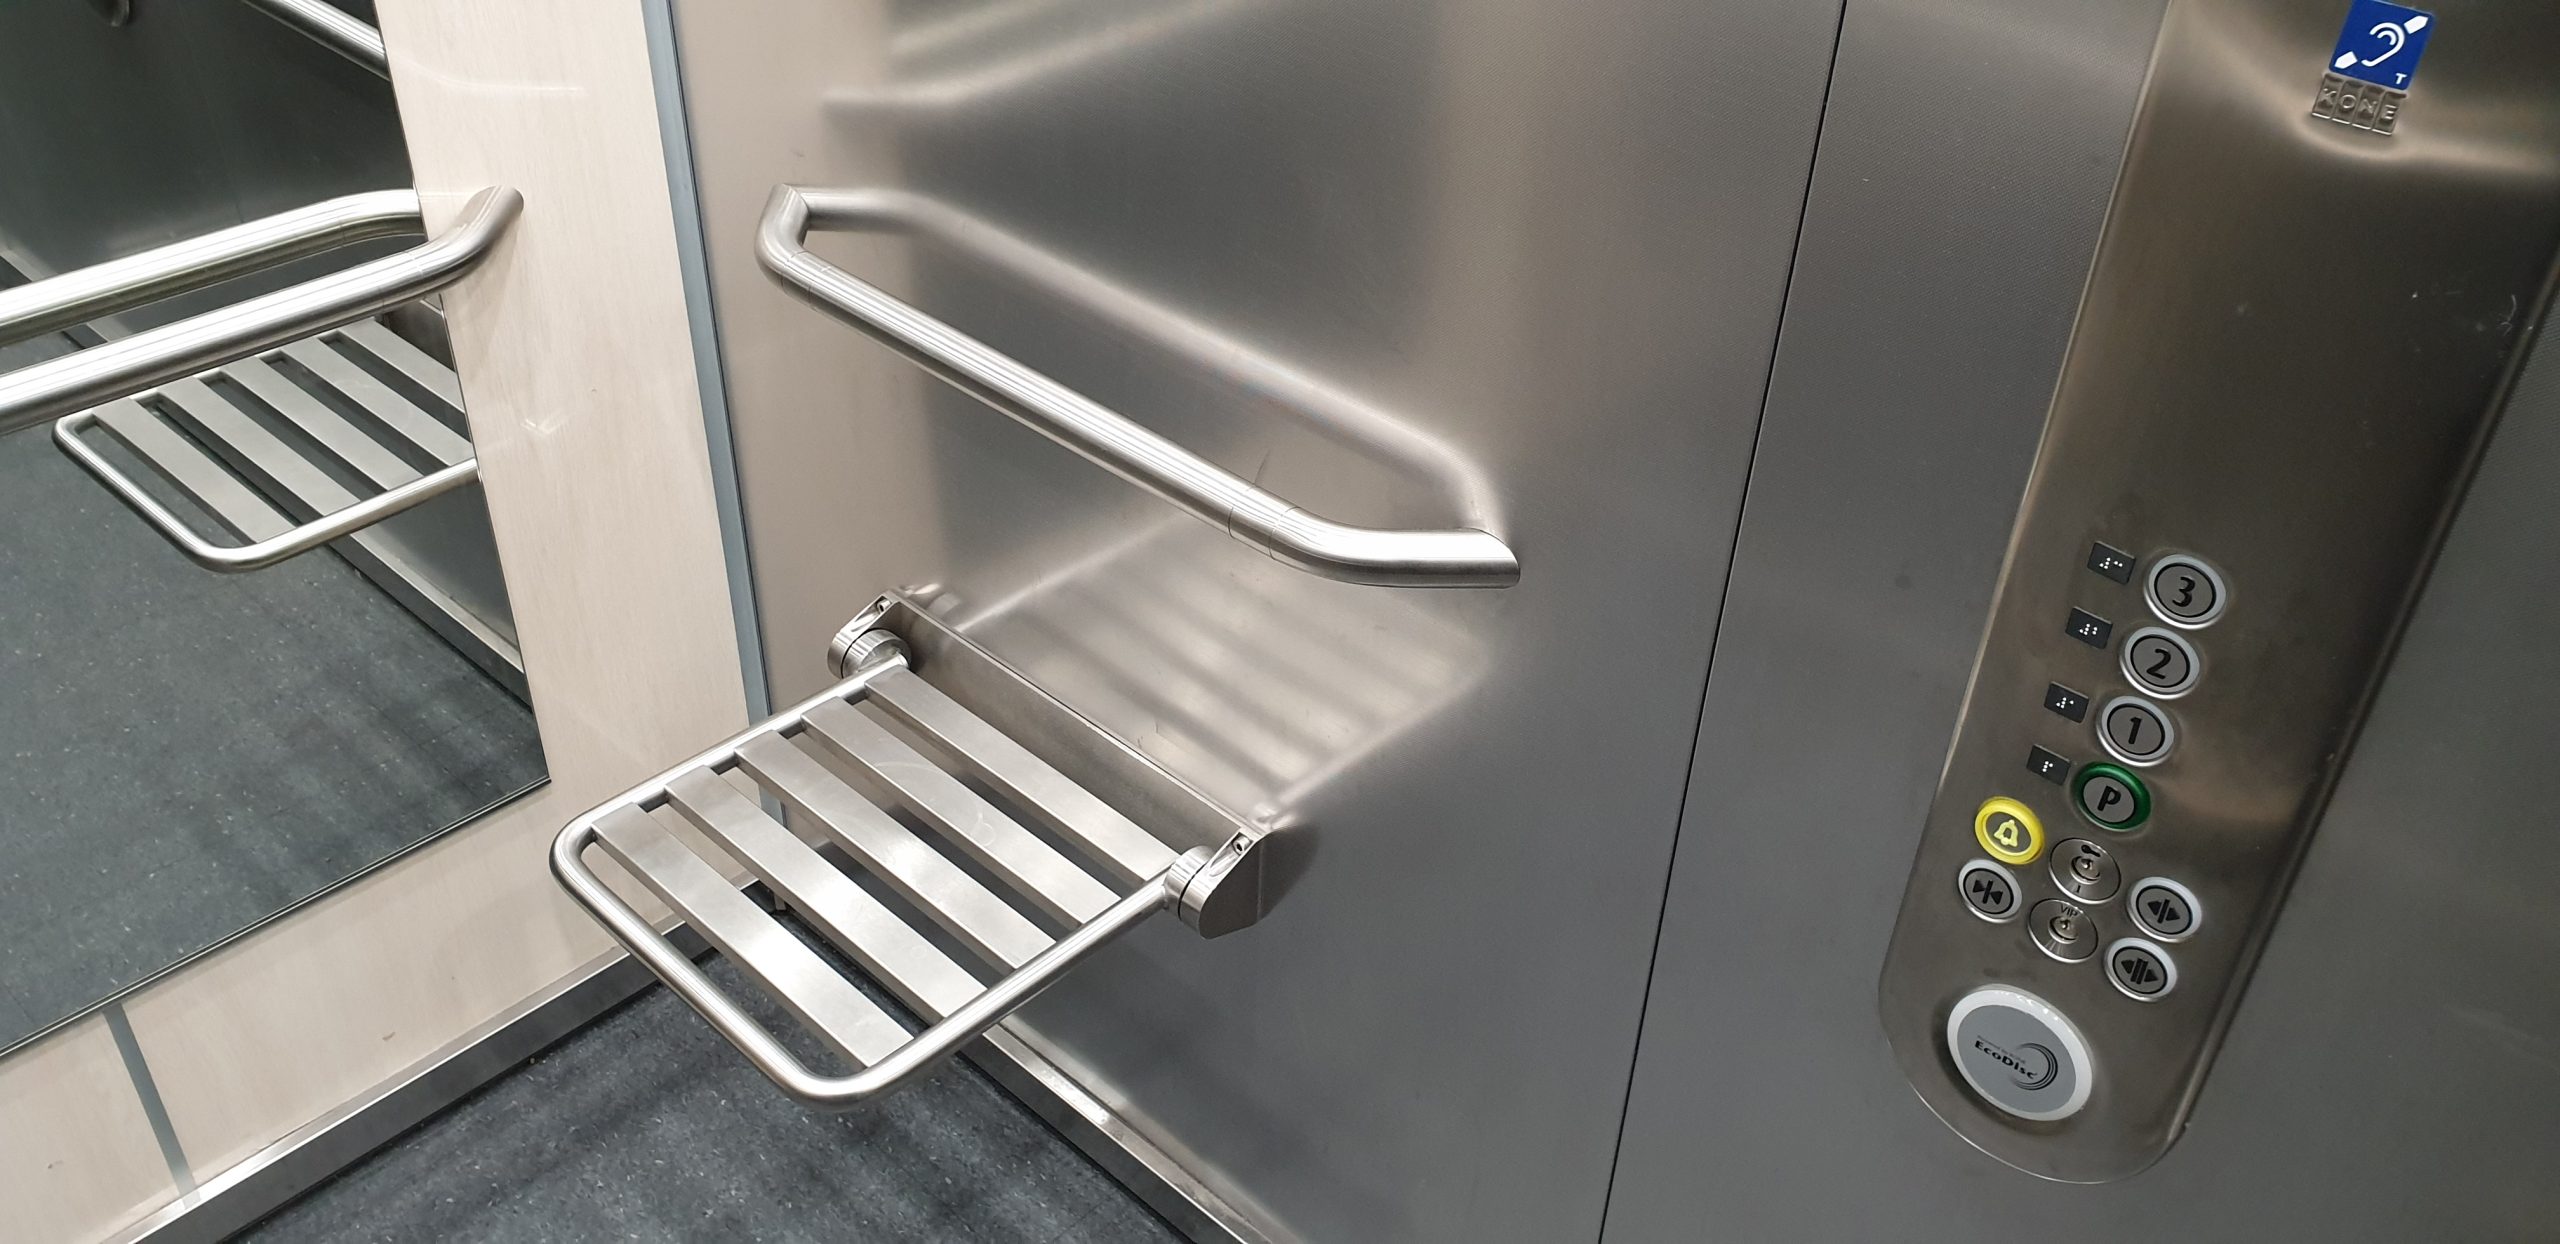 Většina výrobců sklopných sedátek do výtahů neplní požadovanou normu